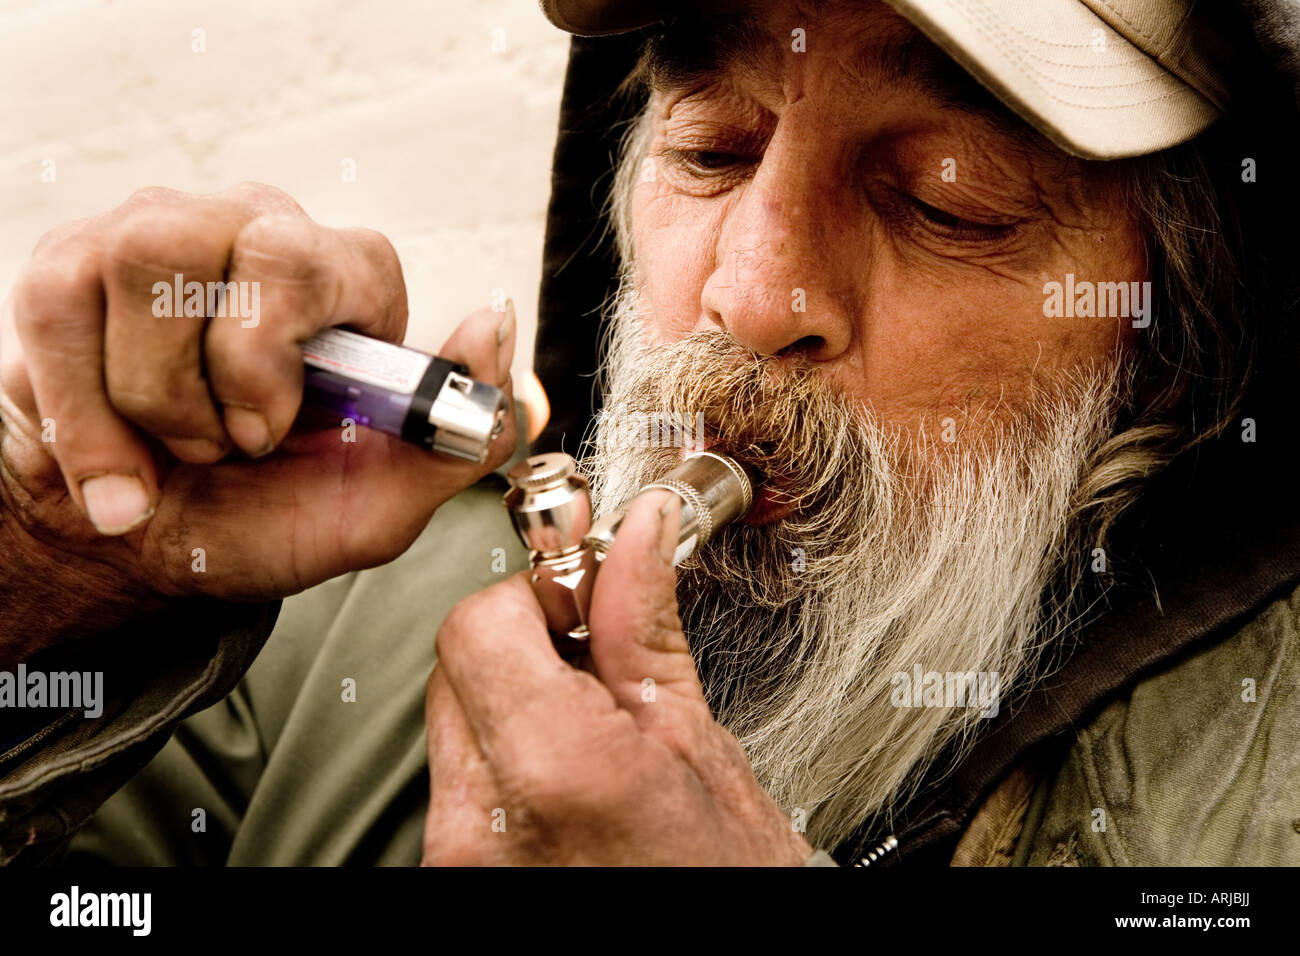 Smoking marijuana bong hi-res stock photography and images - Alamy